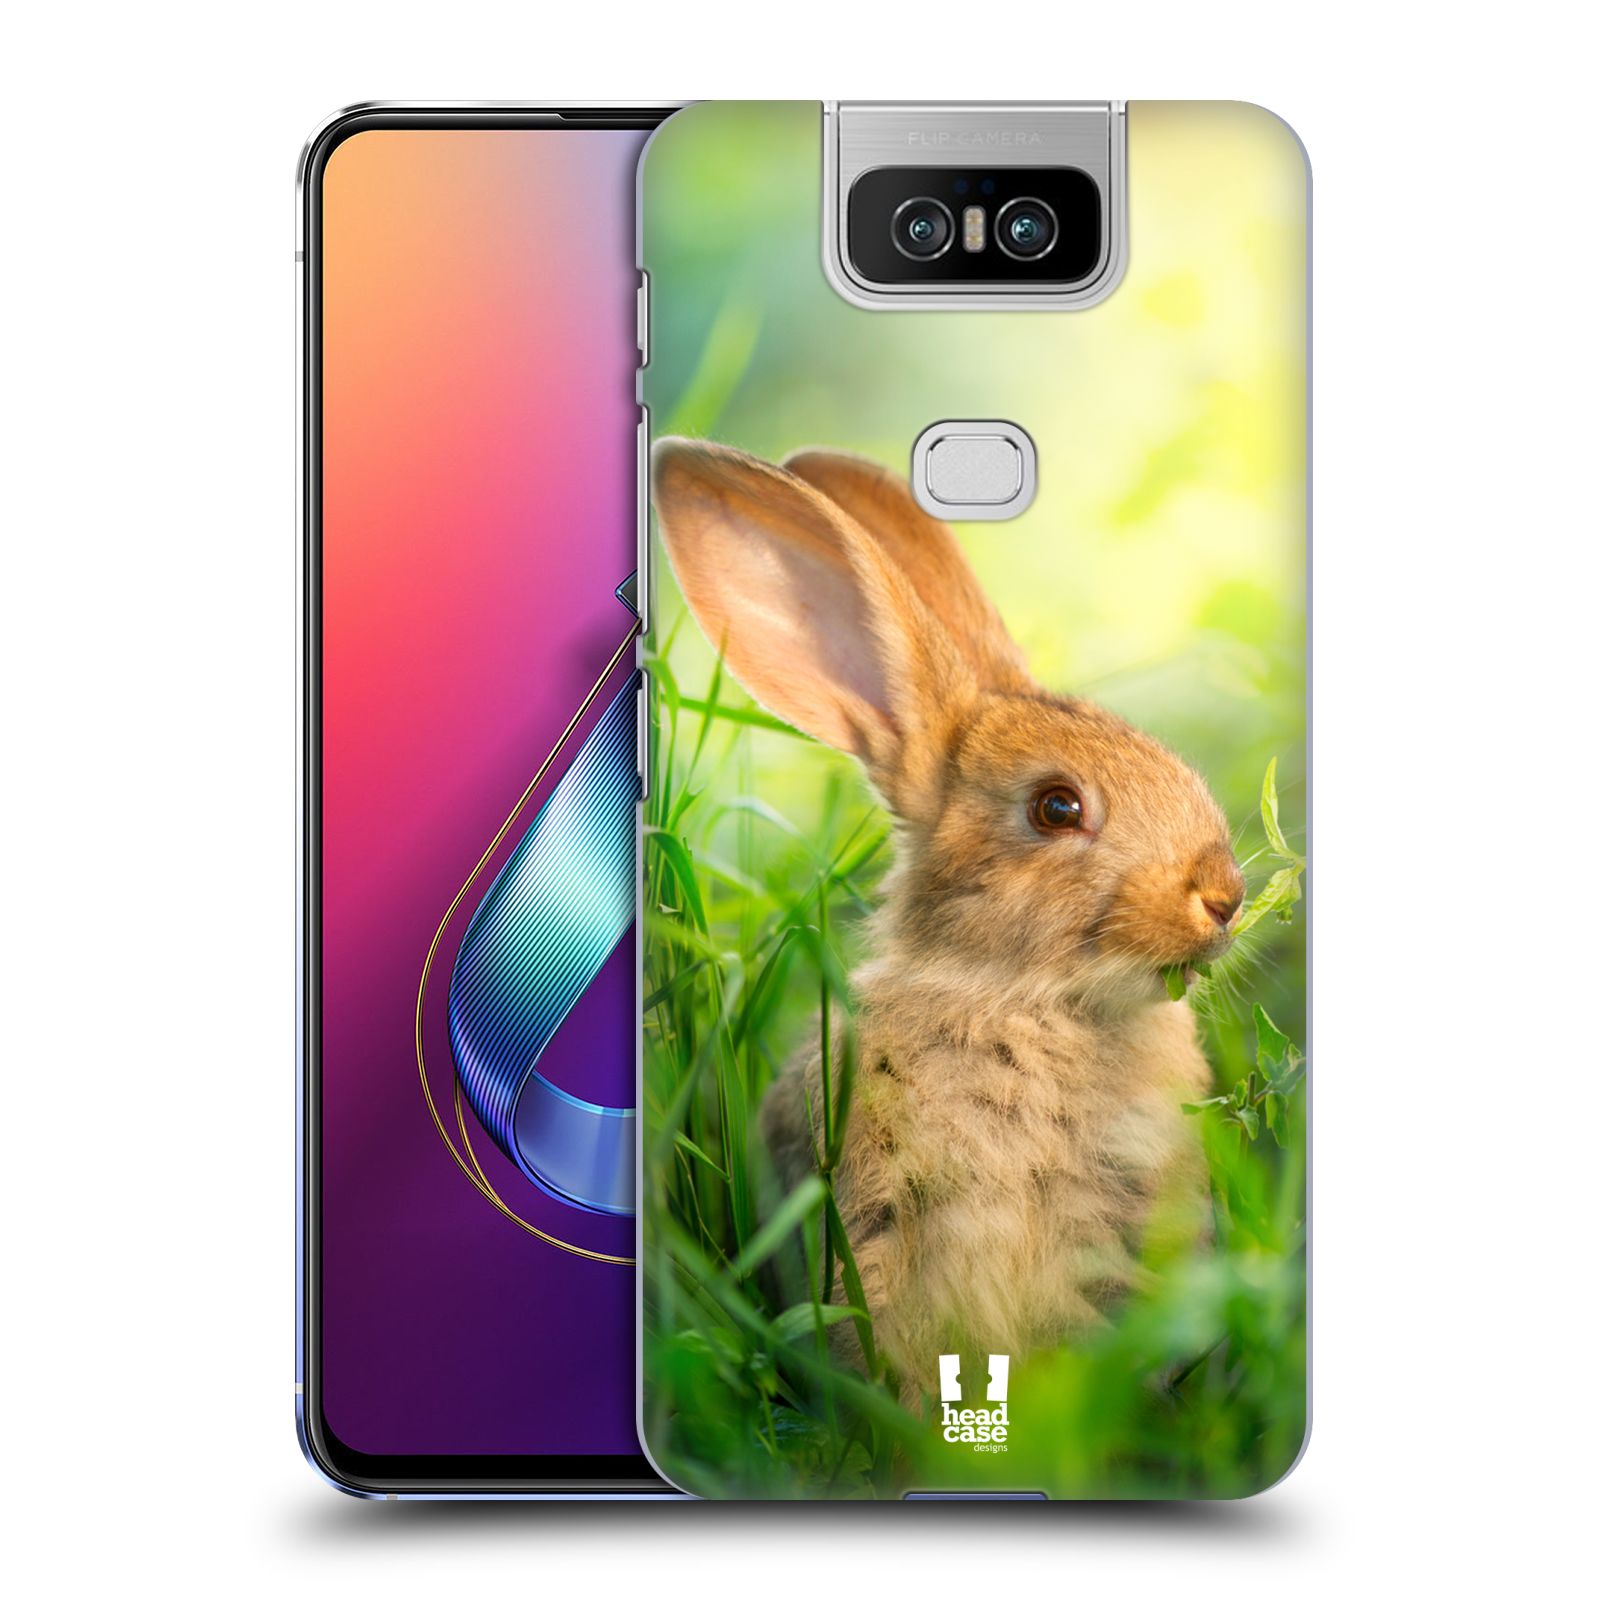 Pouzdro na mobil Asus Zenfone 6 ZS630KL - HEAD CASE - vzor Divočina, Divoký život a zvířata foto ZAJÍČEK V TRÁVĚ ZELENÁ